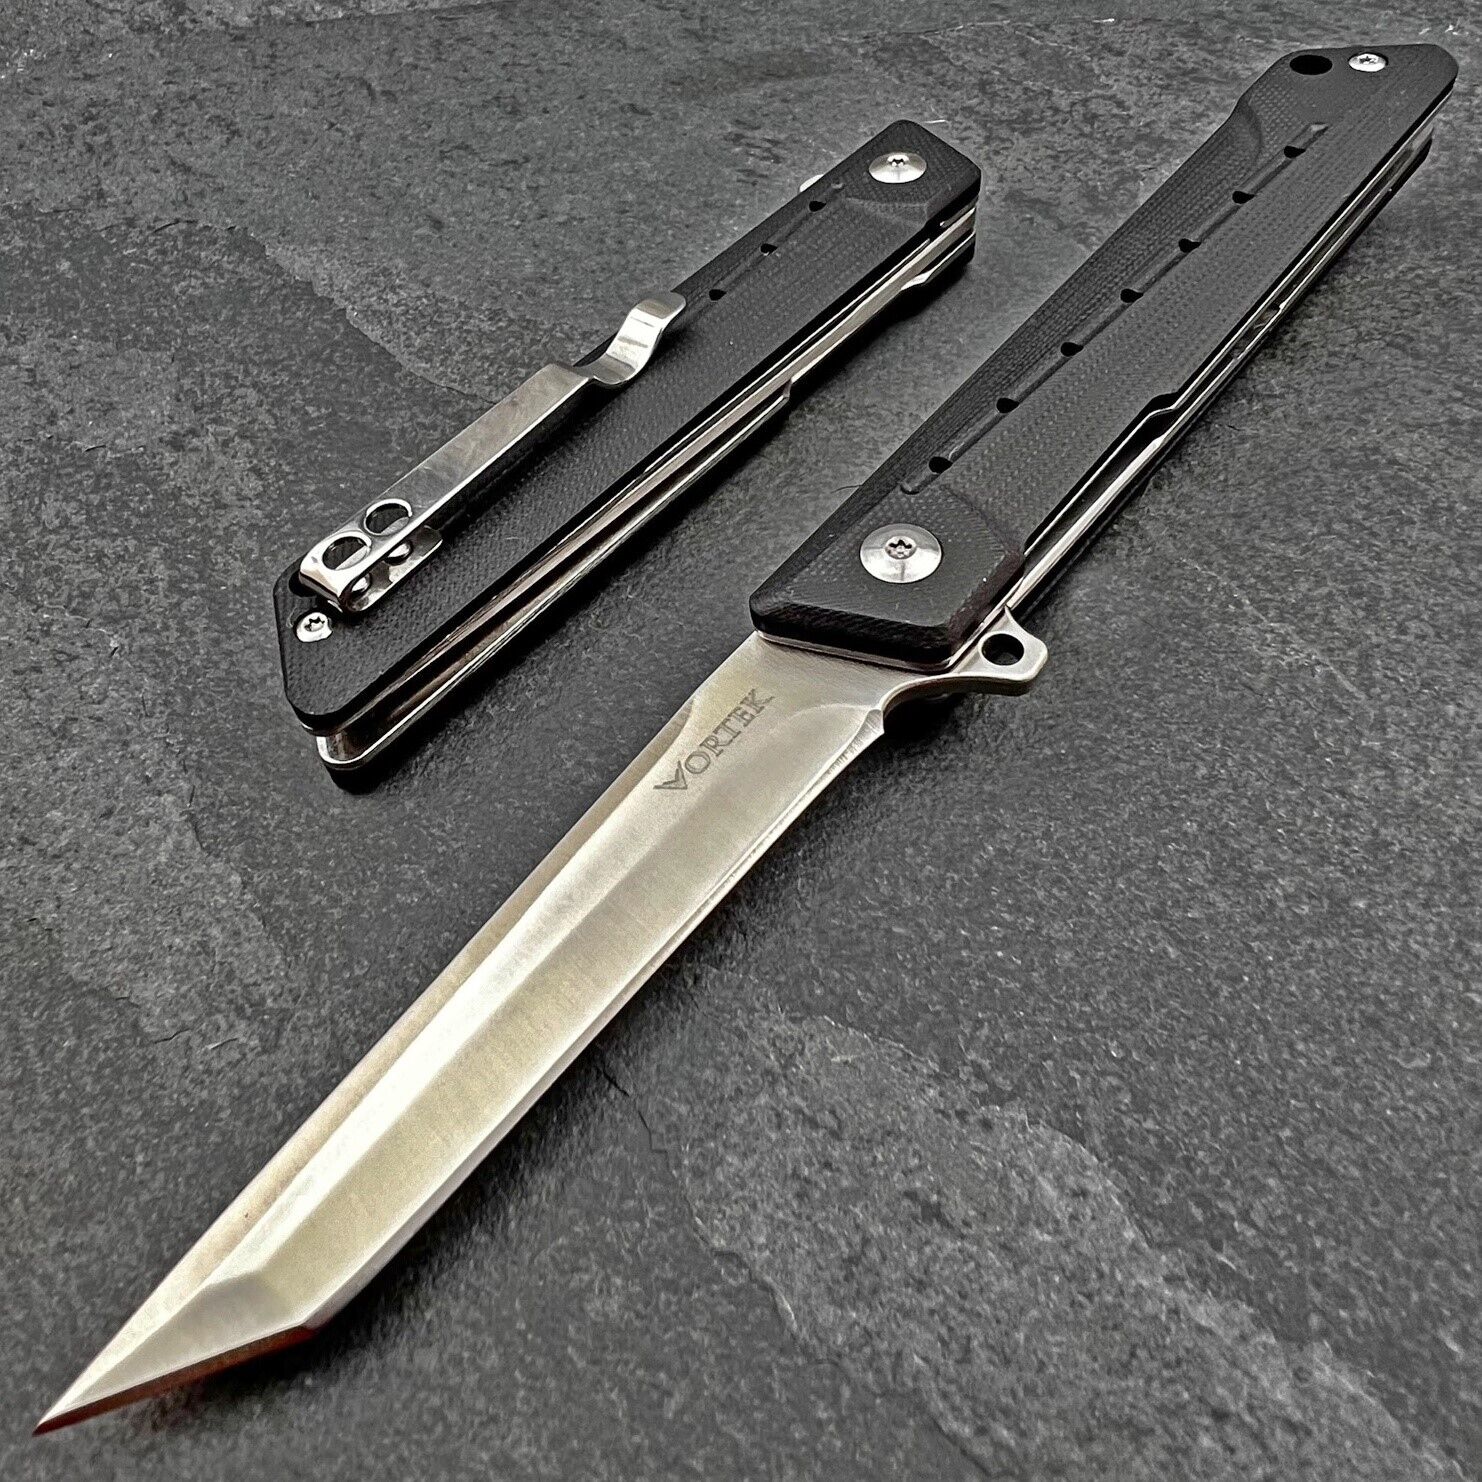 VORTEK TANGO Black G10 Ball Bearing Flipper Tanto Blade Folding EDC Pocket Knife